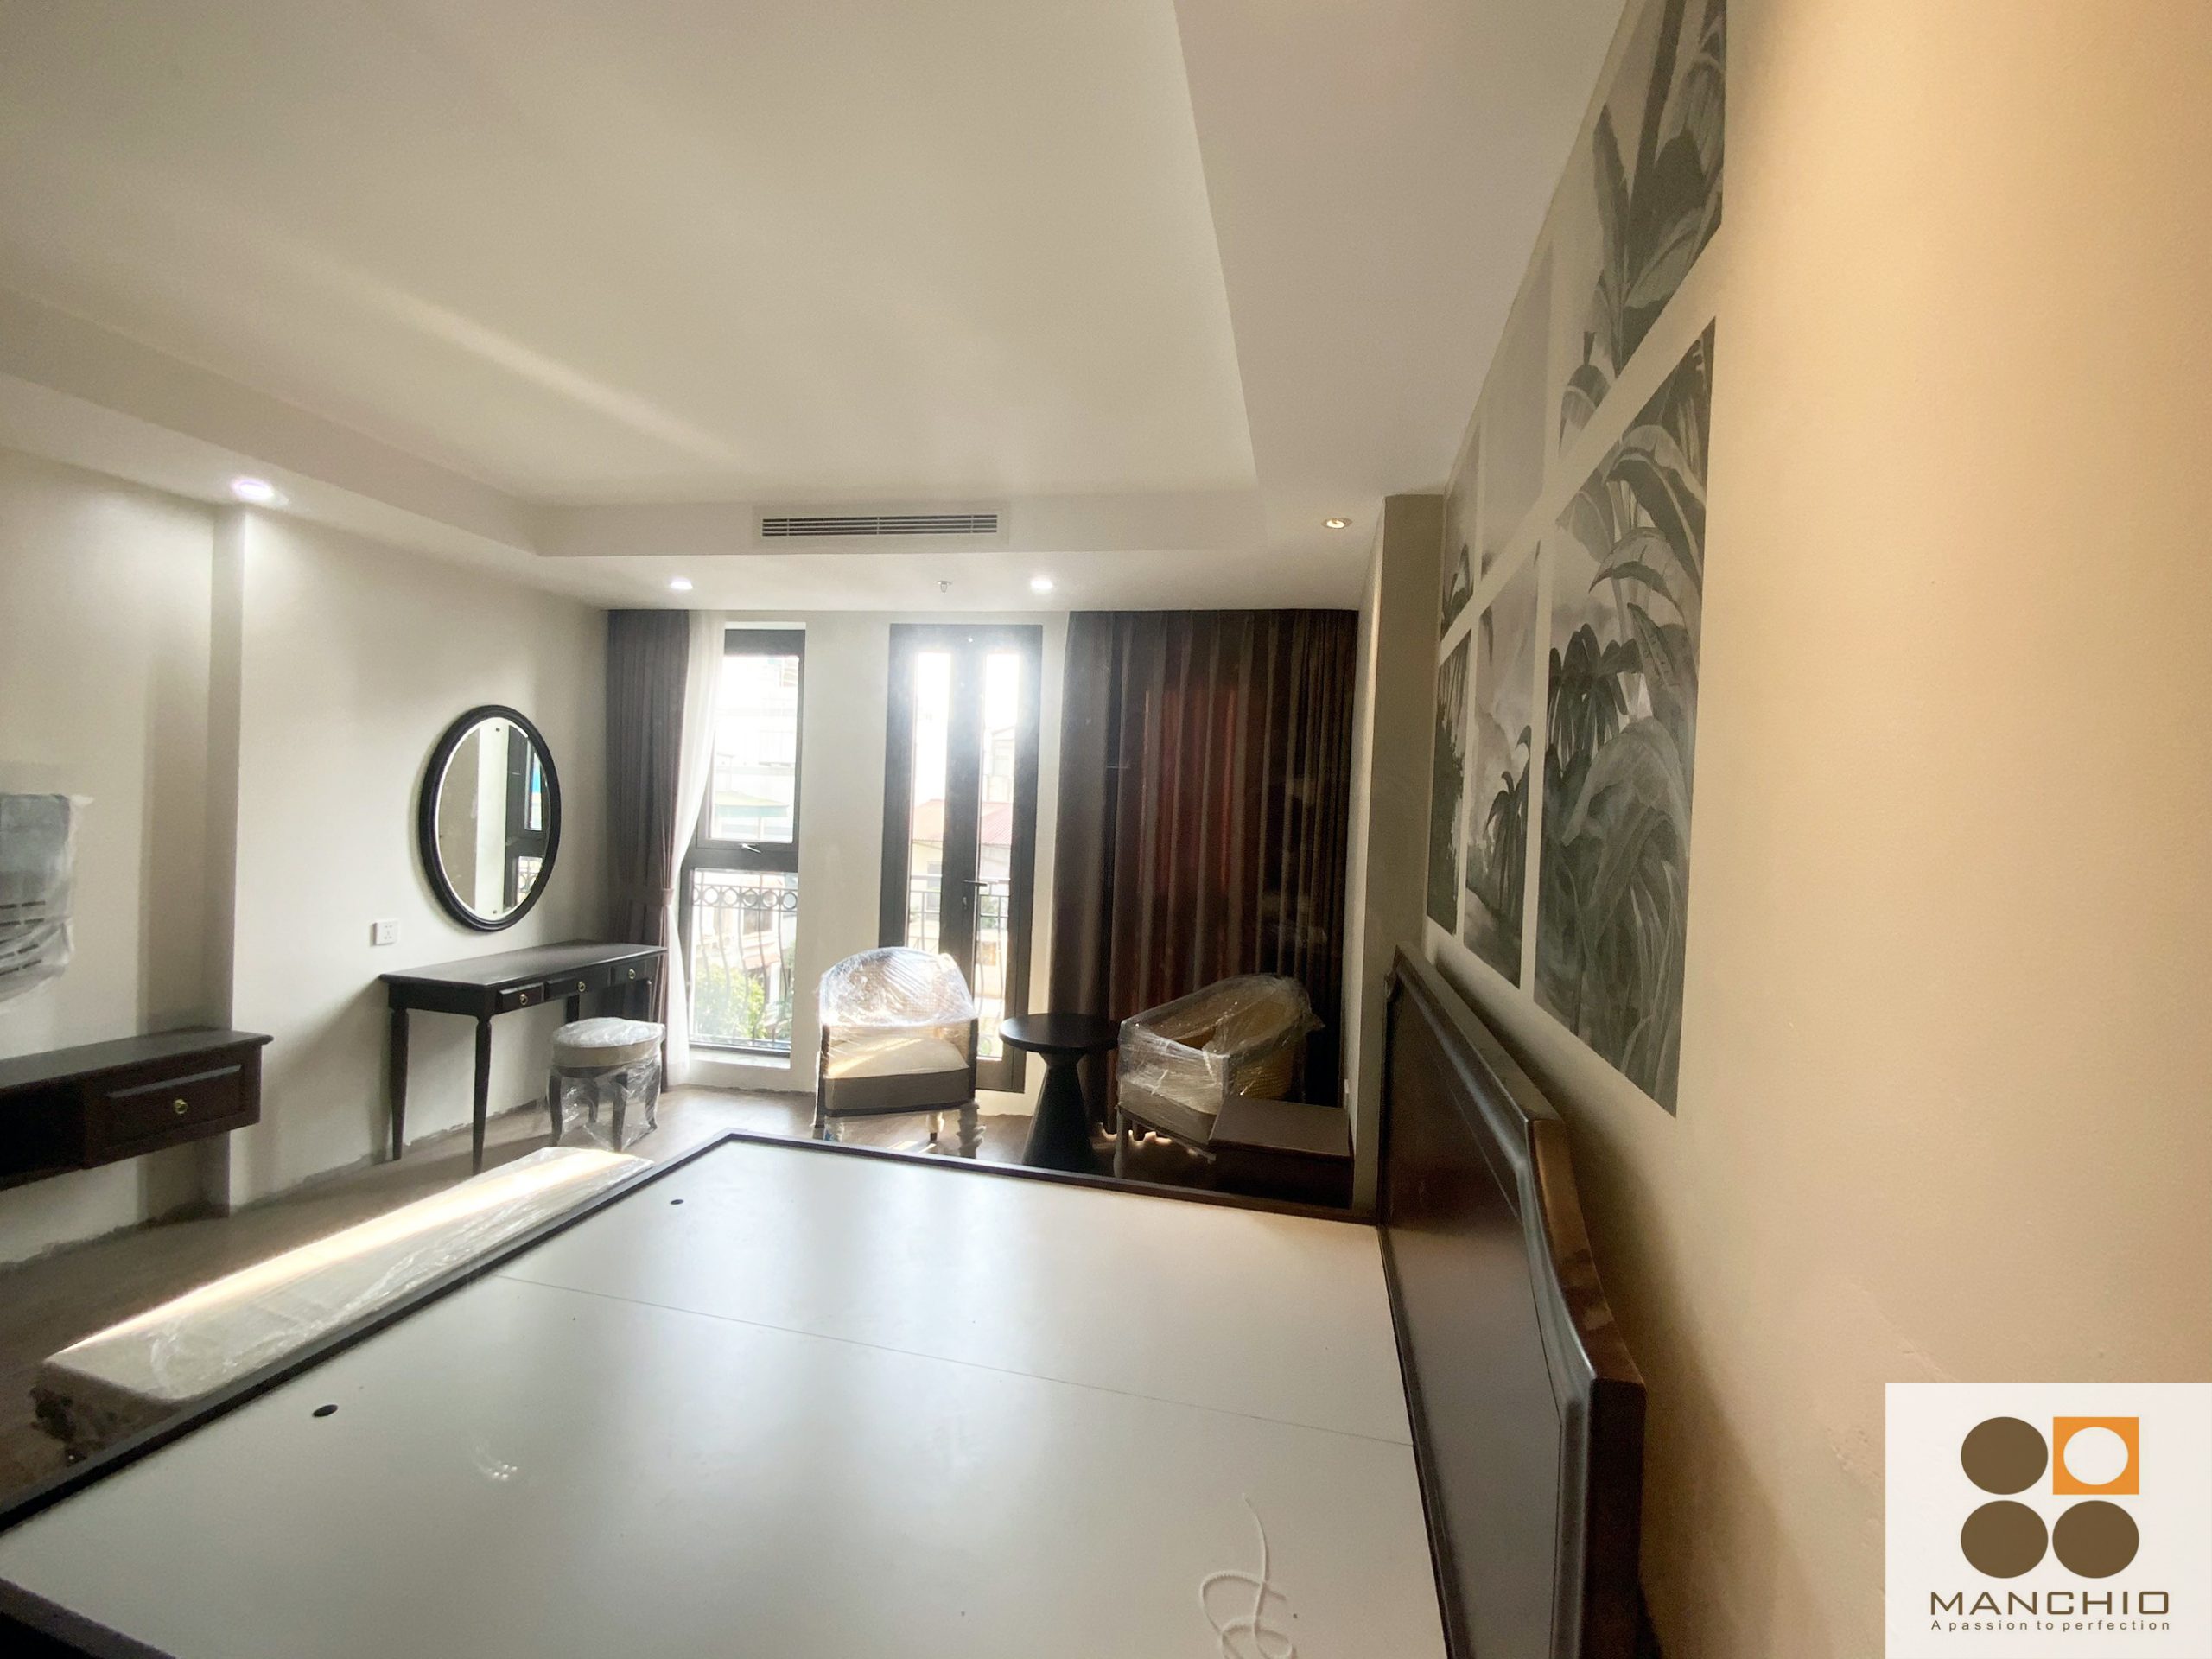 Hình ảnh thi công hoàn thiện nội thất khách sạn Blissington 65 Hàng Bè - Hoàn Kiếm - Hà Nội